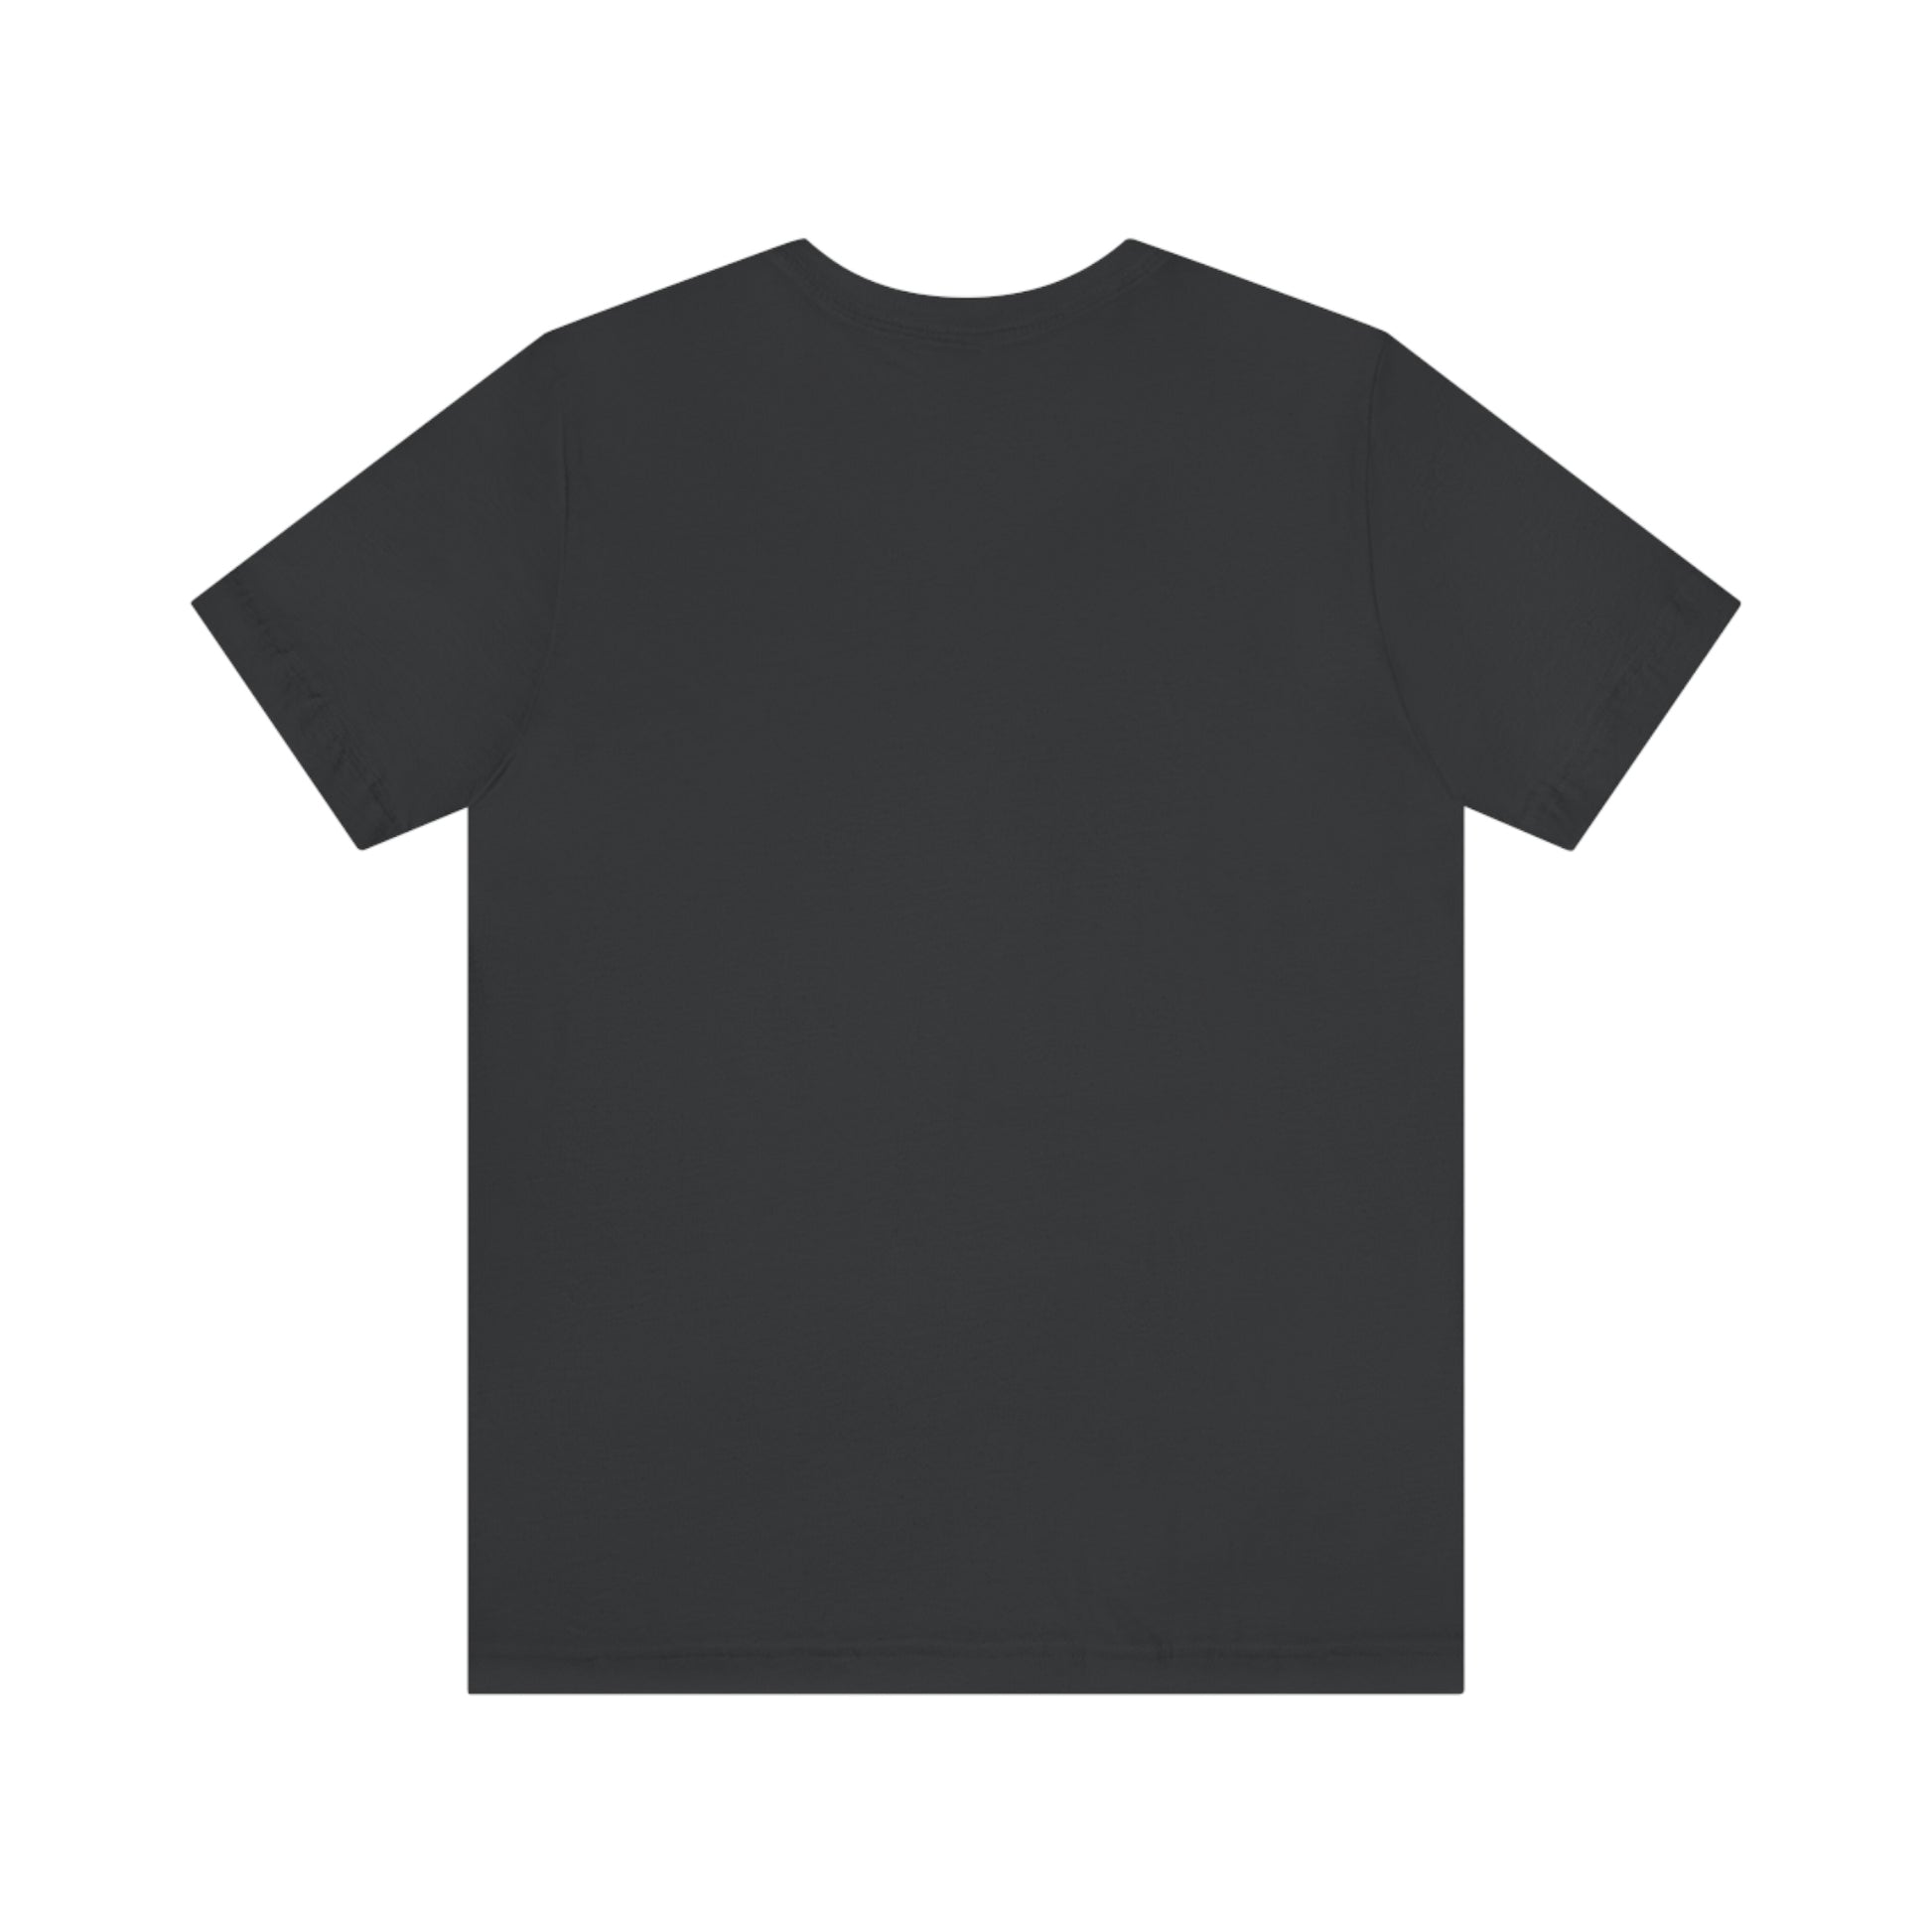 Dark Grey T-Shirt plain back